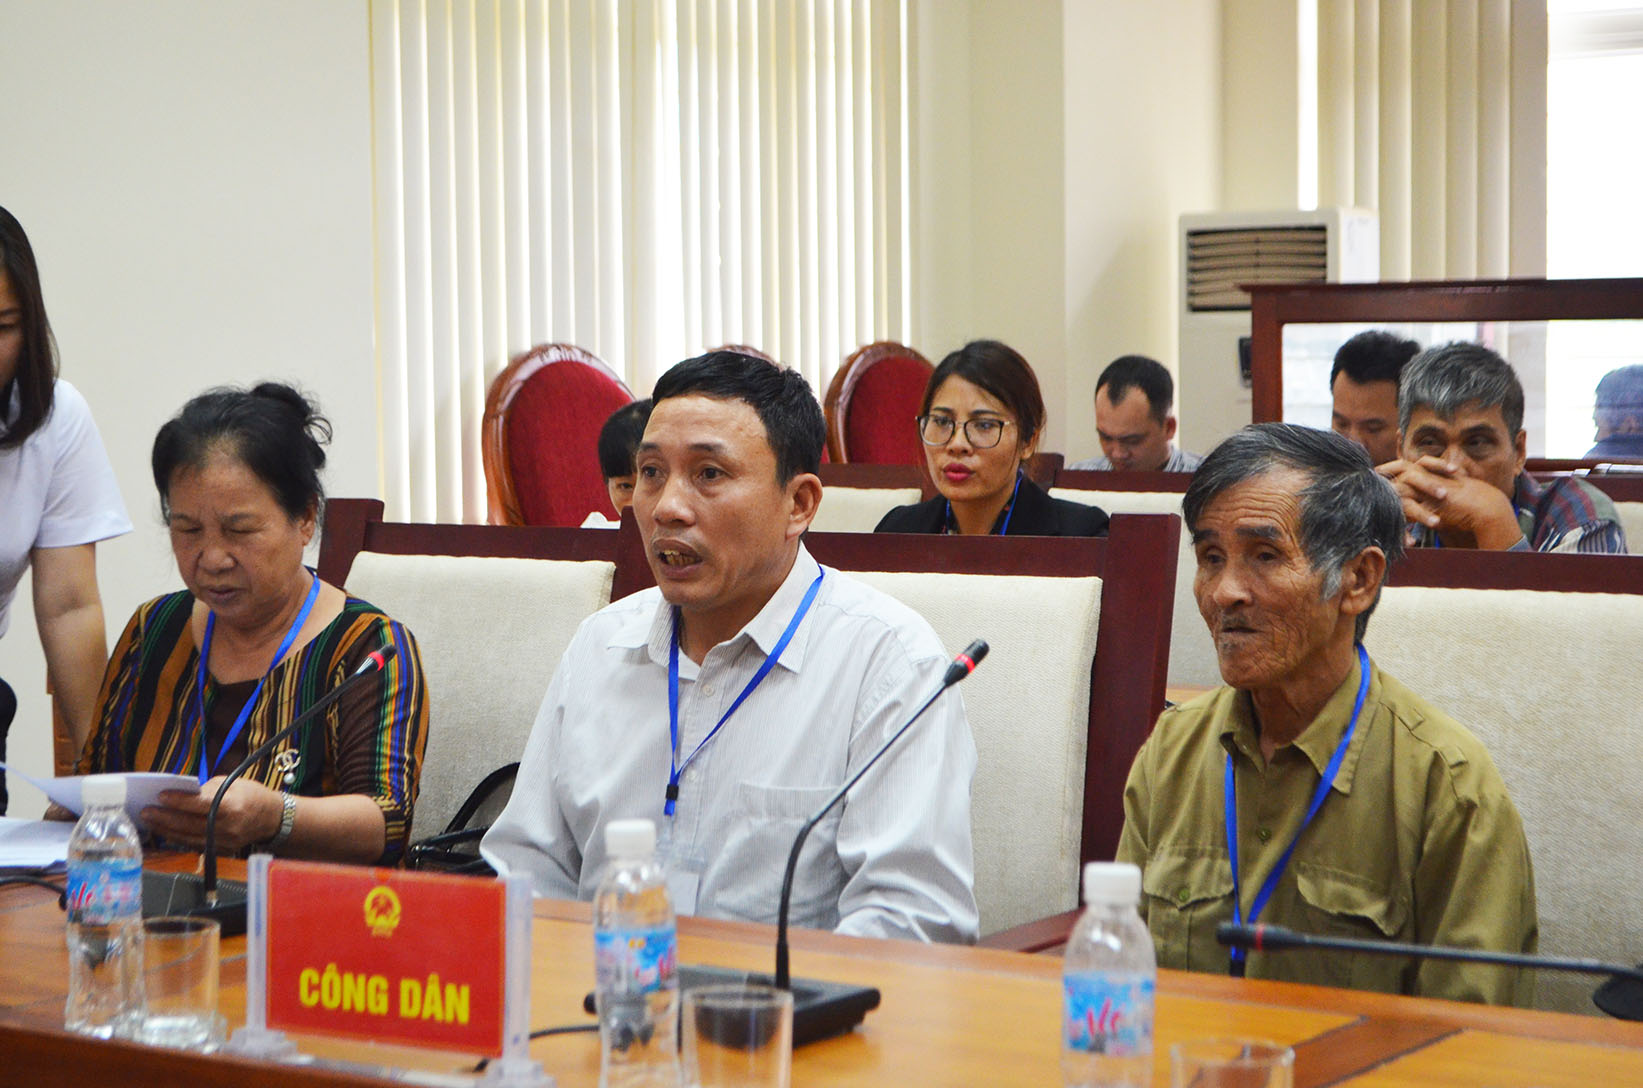 Các hộ dân HTX Hợp Tiến, TP Hạ Long kiến nghị liên quan việc thực hiện dự án Hậu Cần-Cảng Cái Lân